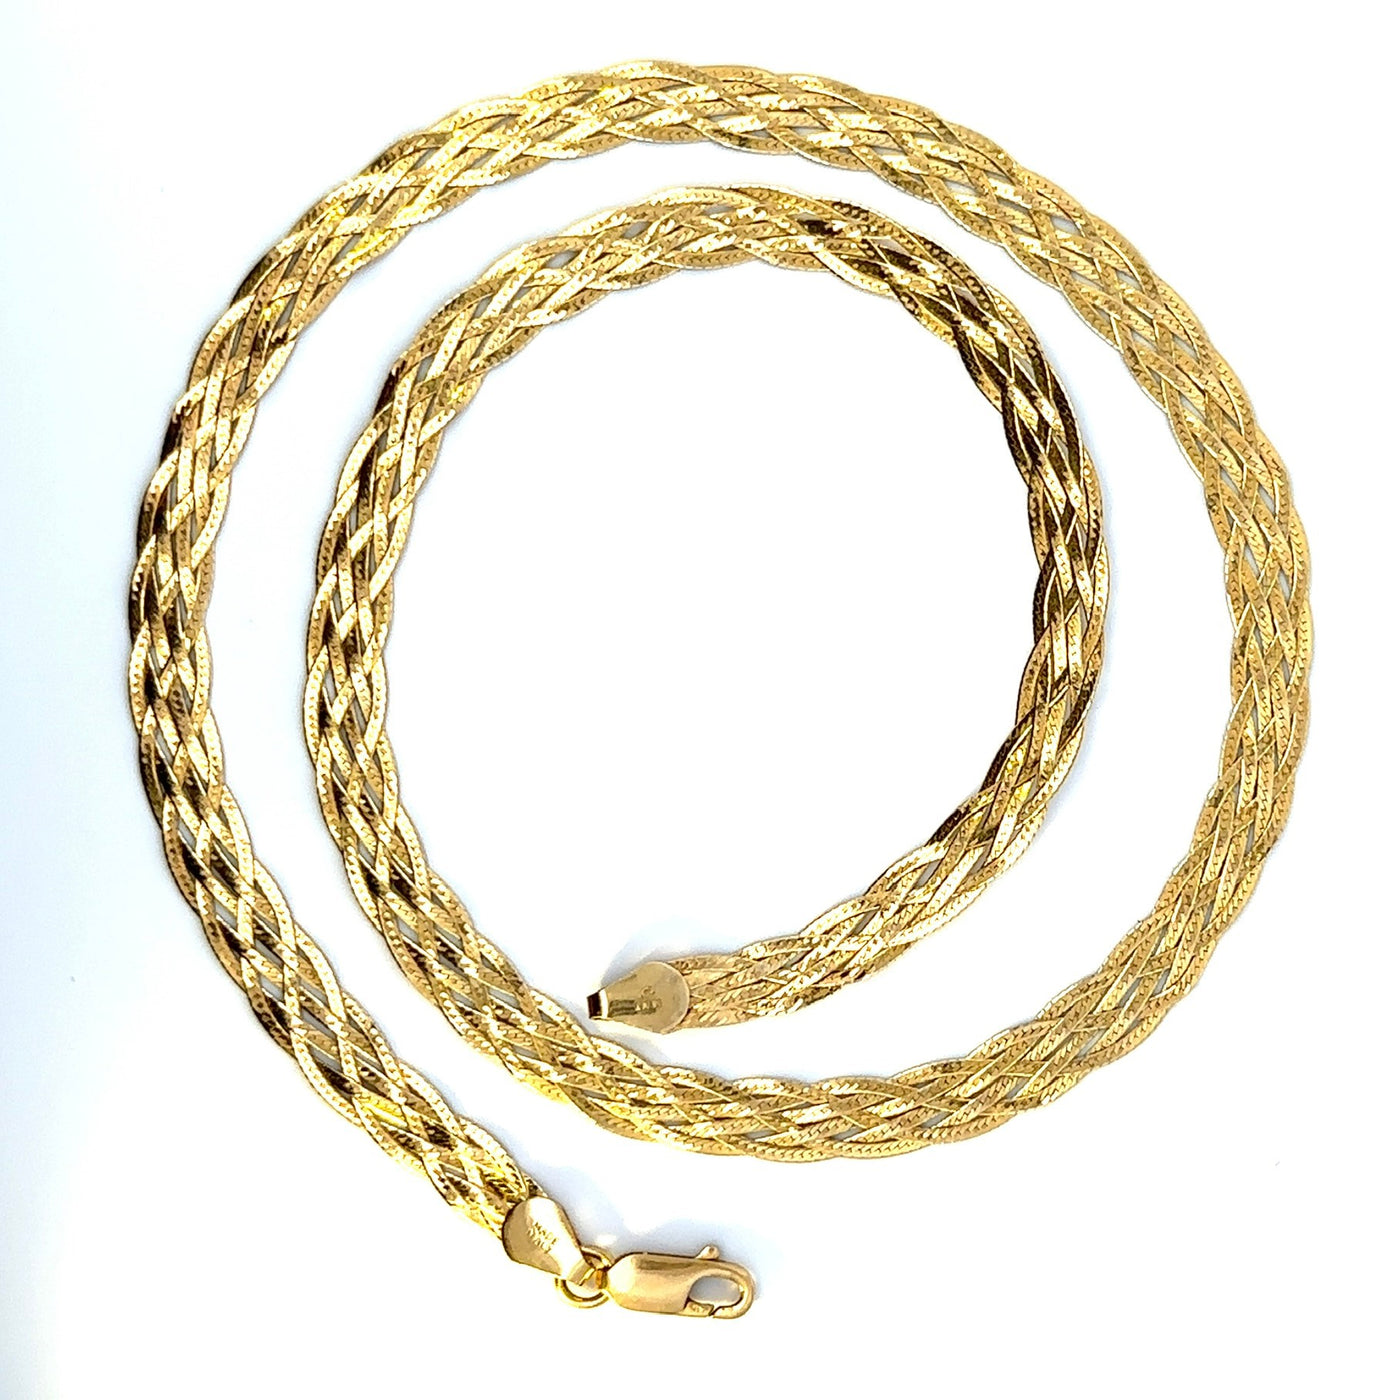 Vintage Braided Serpentine Chain no. 15